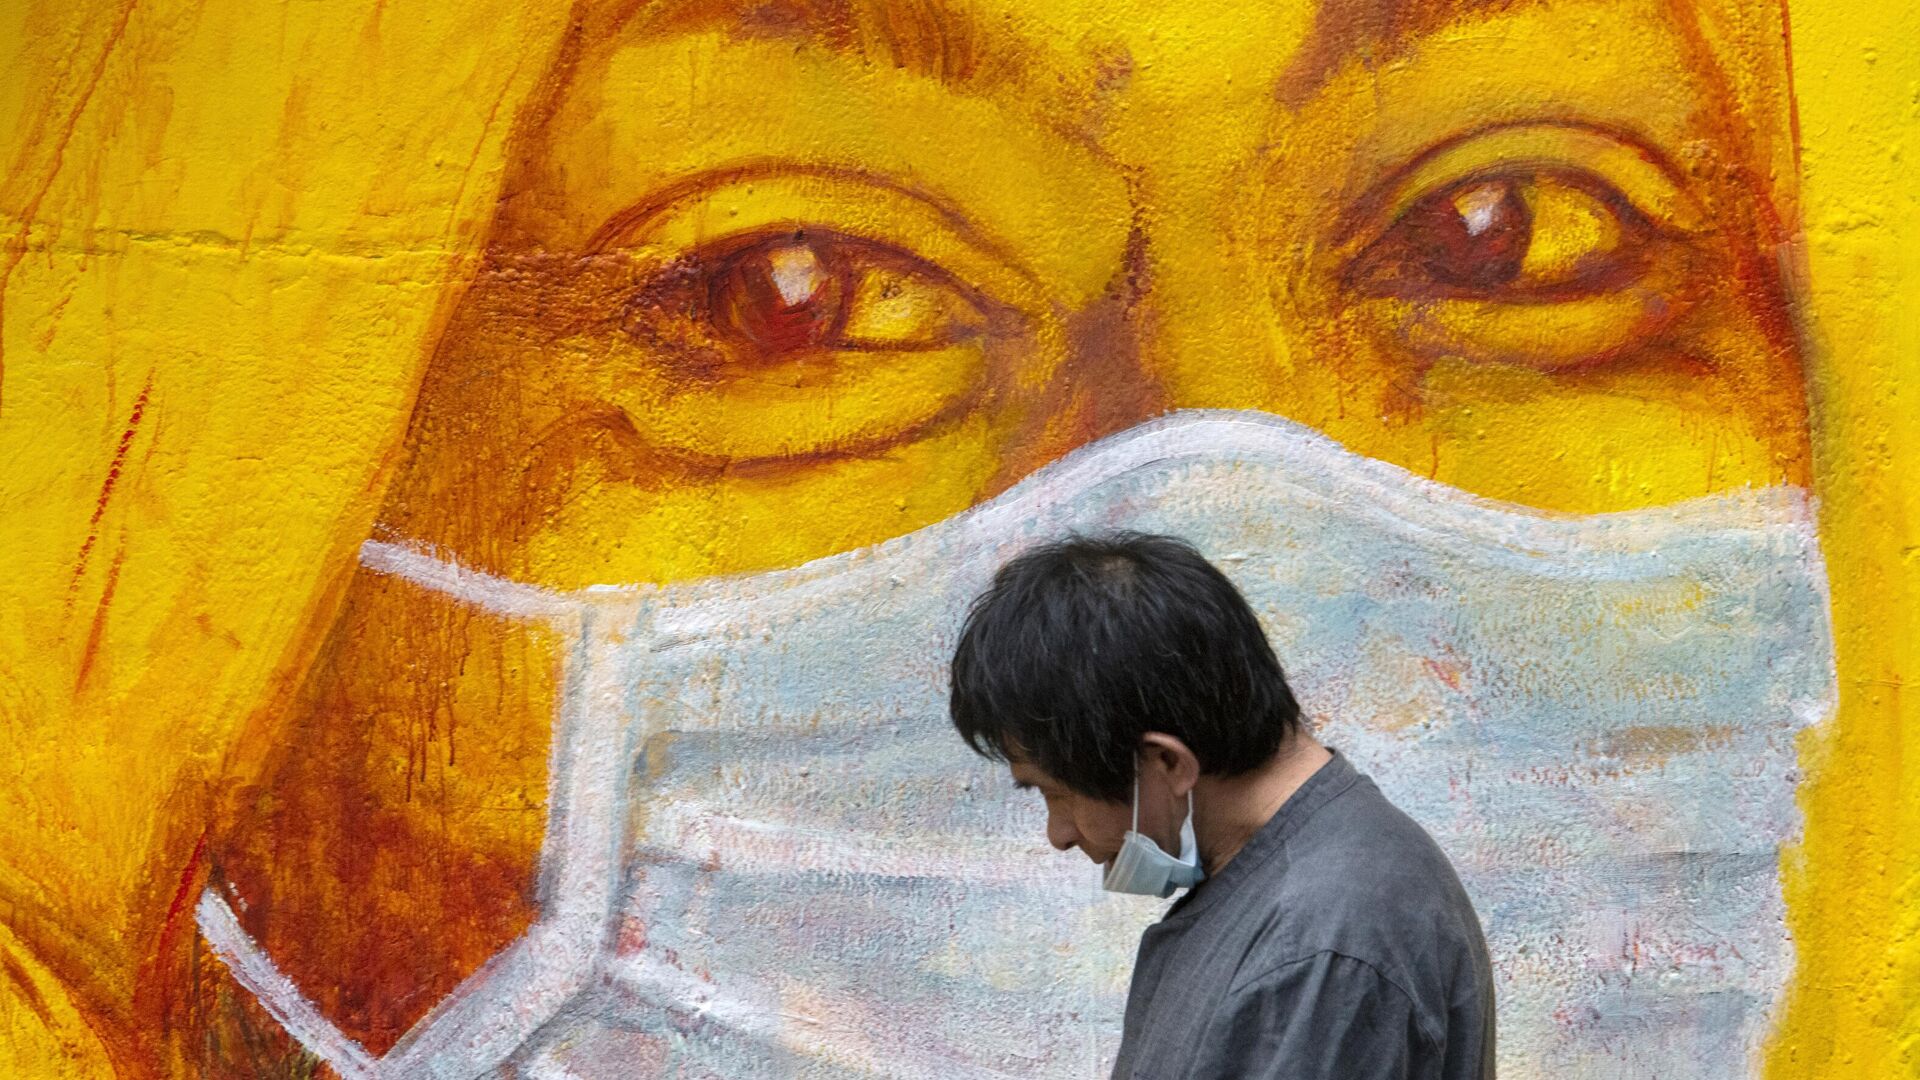 Прохожий около стены с изображением человека в маске в Гонконге - РИА Новости, 1920, 07.09.2020